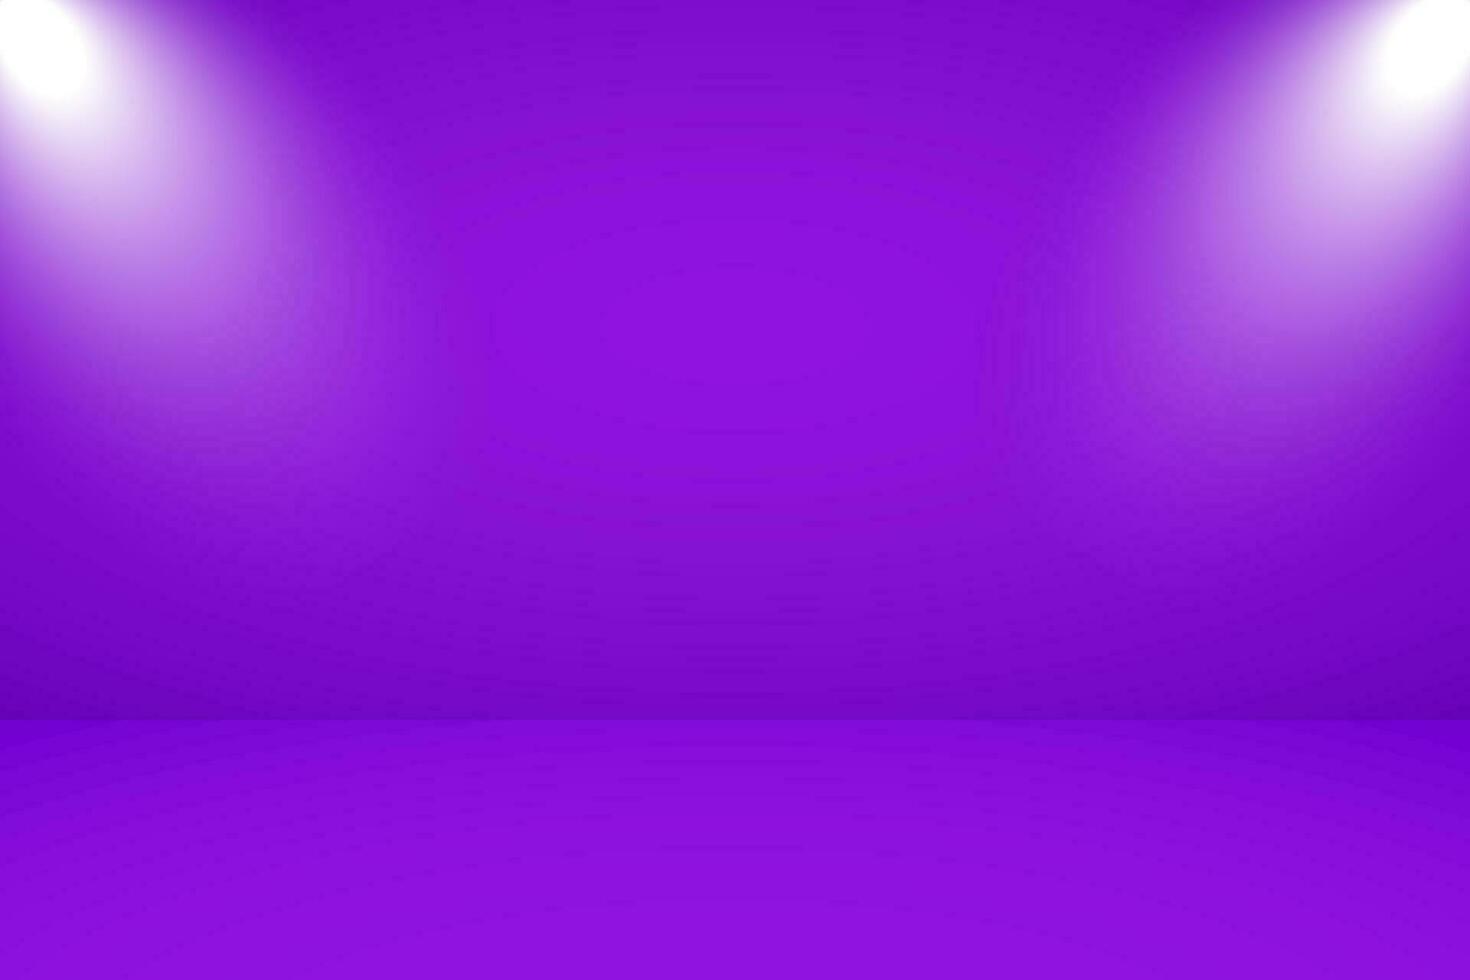 Vektor Illustration von leeren Studio mit Beleuchtung und violett Hintergrund zum Produkt Anzeige